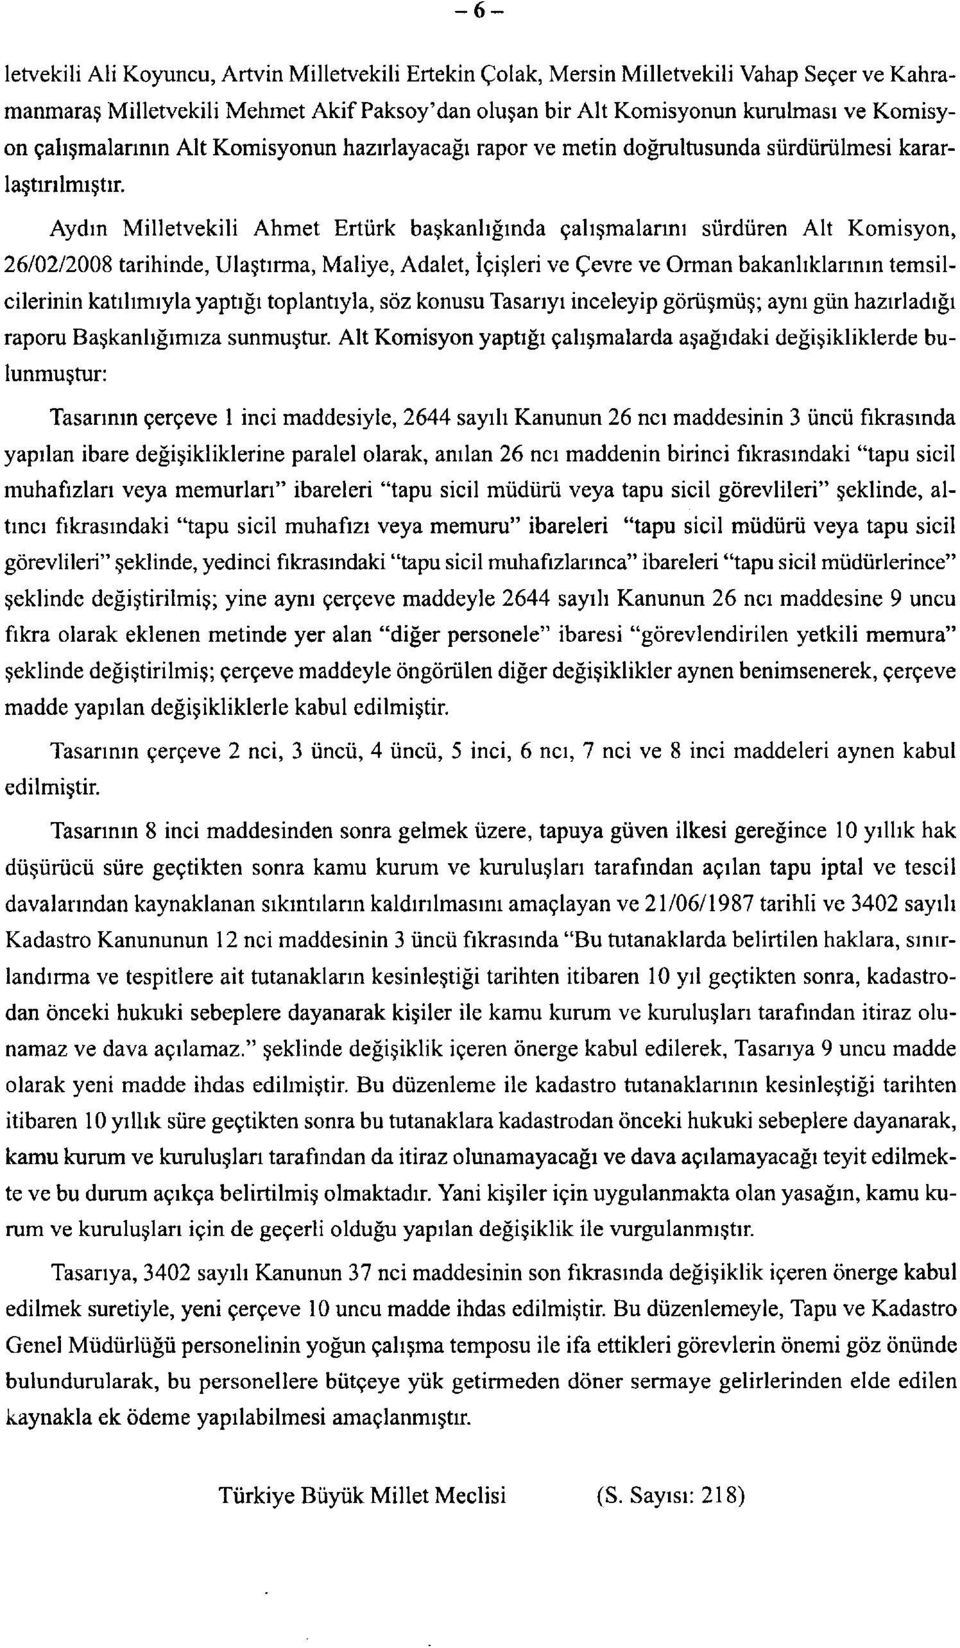 Aydın Milletvekili Ahmet Ertürk başkanlığında çalışmalarını sürdüren Alt Komisyon, 26/02/2008 tarihinde, Ulaştırma, Maliye, Adalet, İçişleri ve Çevre ve Orman bakanlıklarının temsilcilerinin